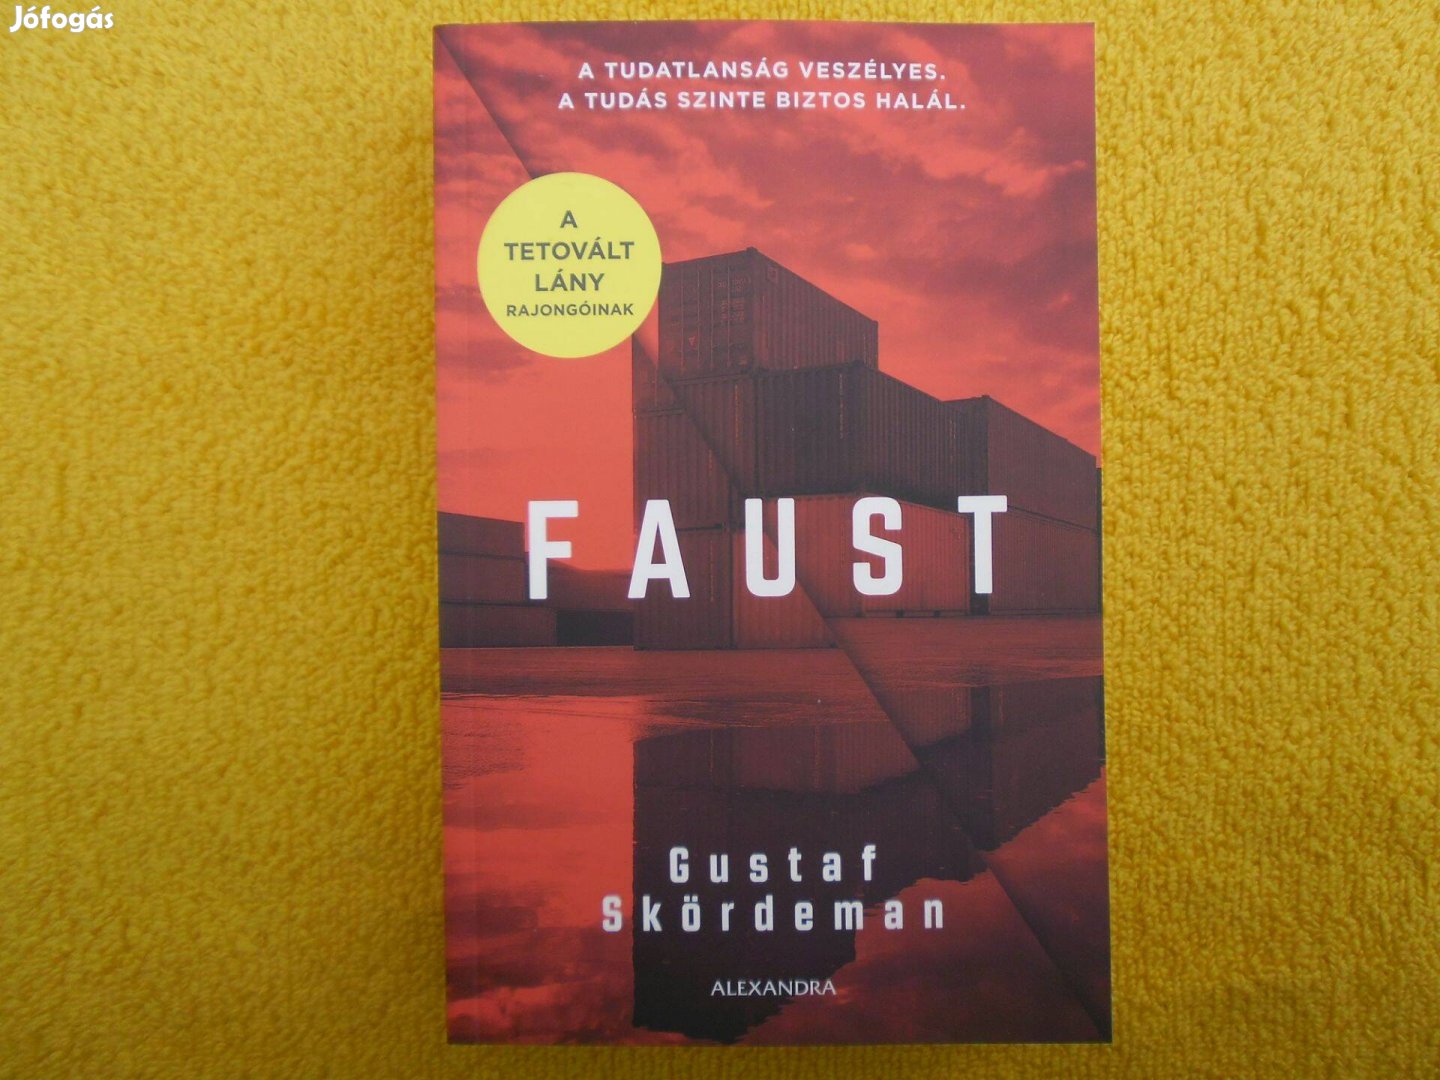 Gustaf Skördeman: Faust /Svéd krimik/